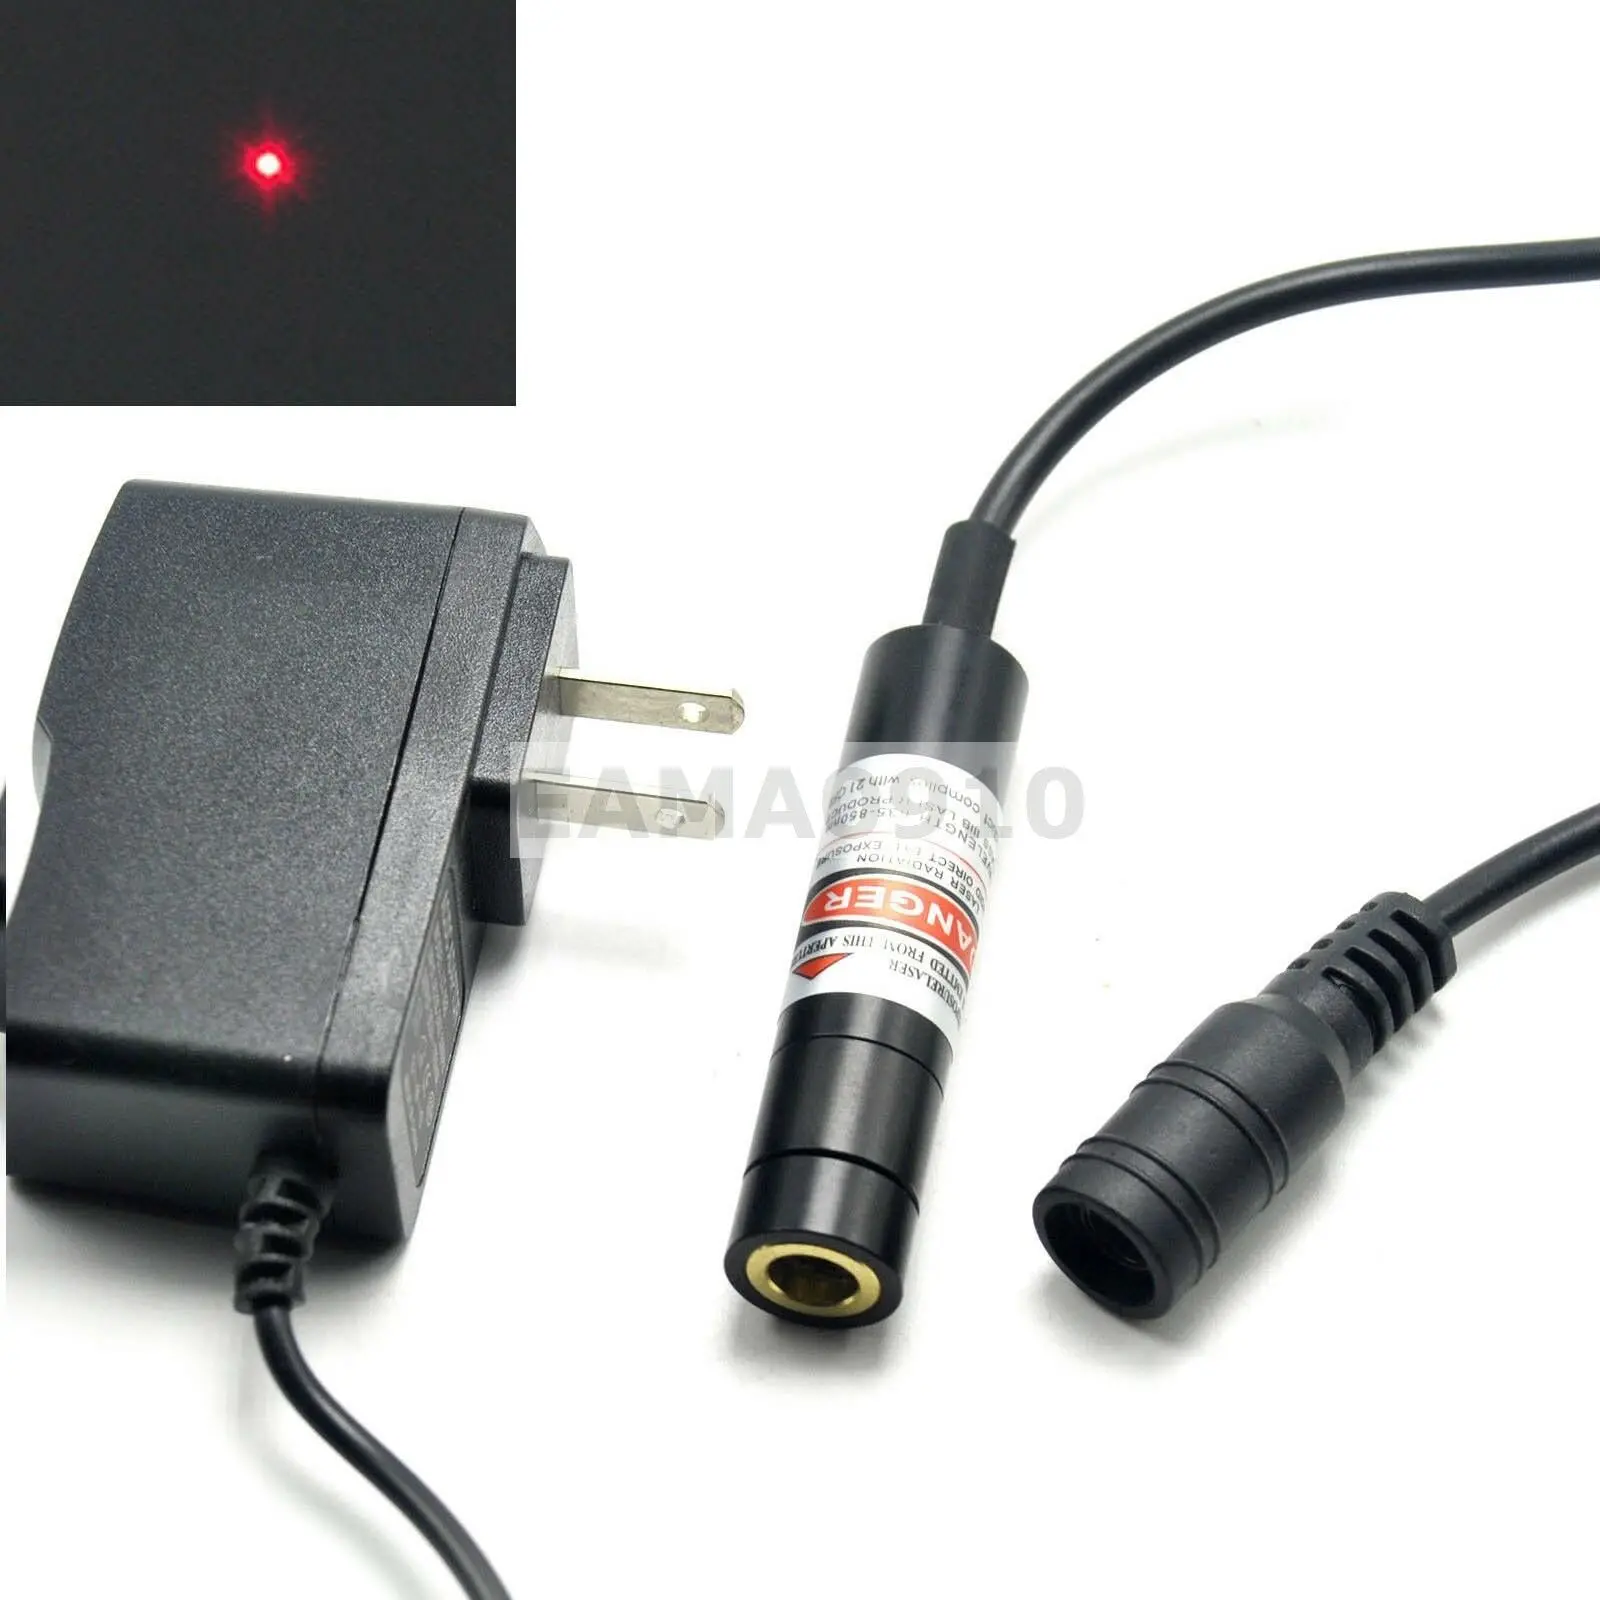 Module de Diode Laser rouge focalisable 20mW, 650nm 12x55mm avec adaptateur